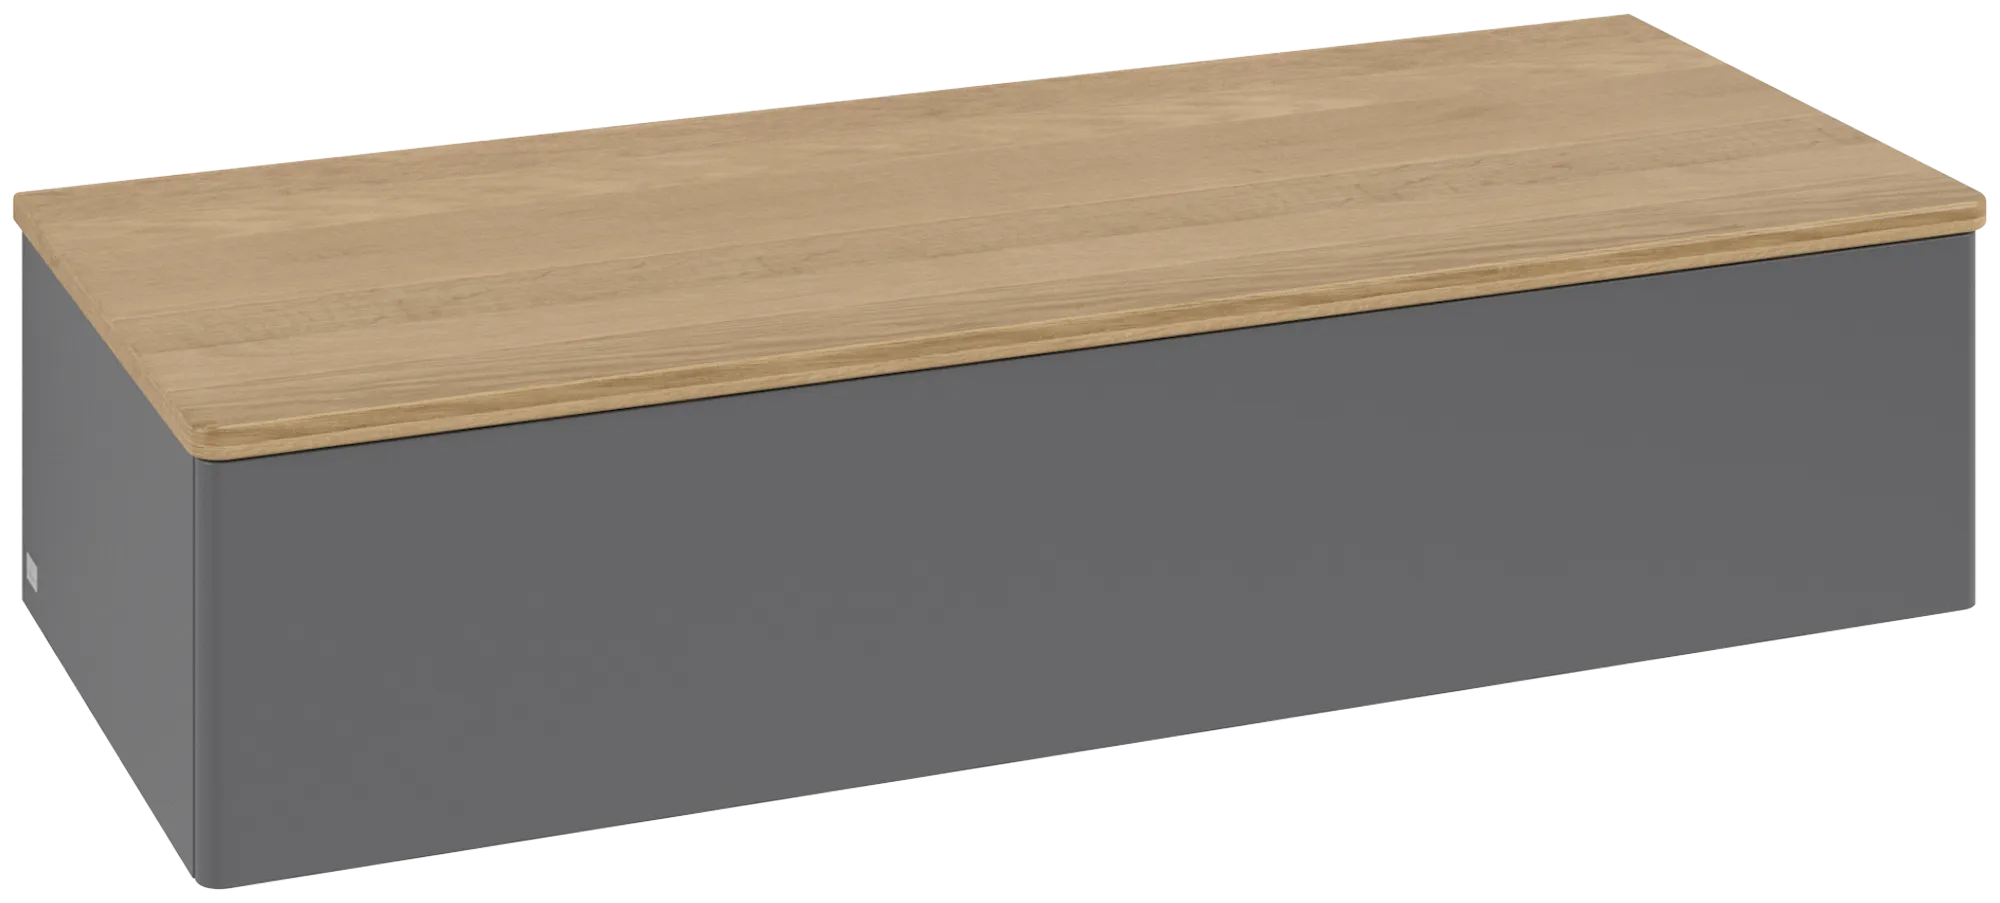 Bild von VILLEROY BOCH Antao Sideboard, 1 Auszug, 1200 x 268 x 500 mm, Front ohne Struktur, Anthracite Matt Lacquer / Honey Oak #K41001GK